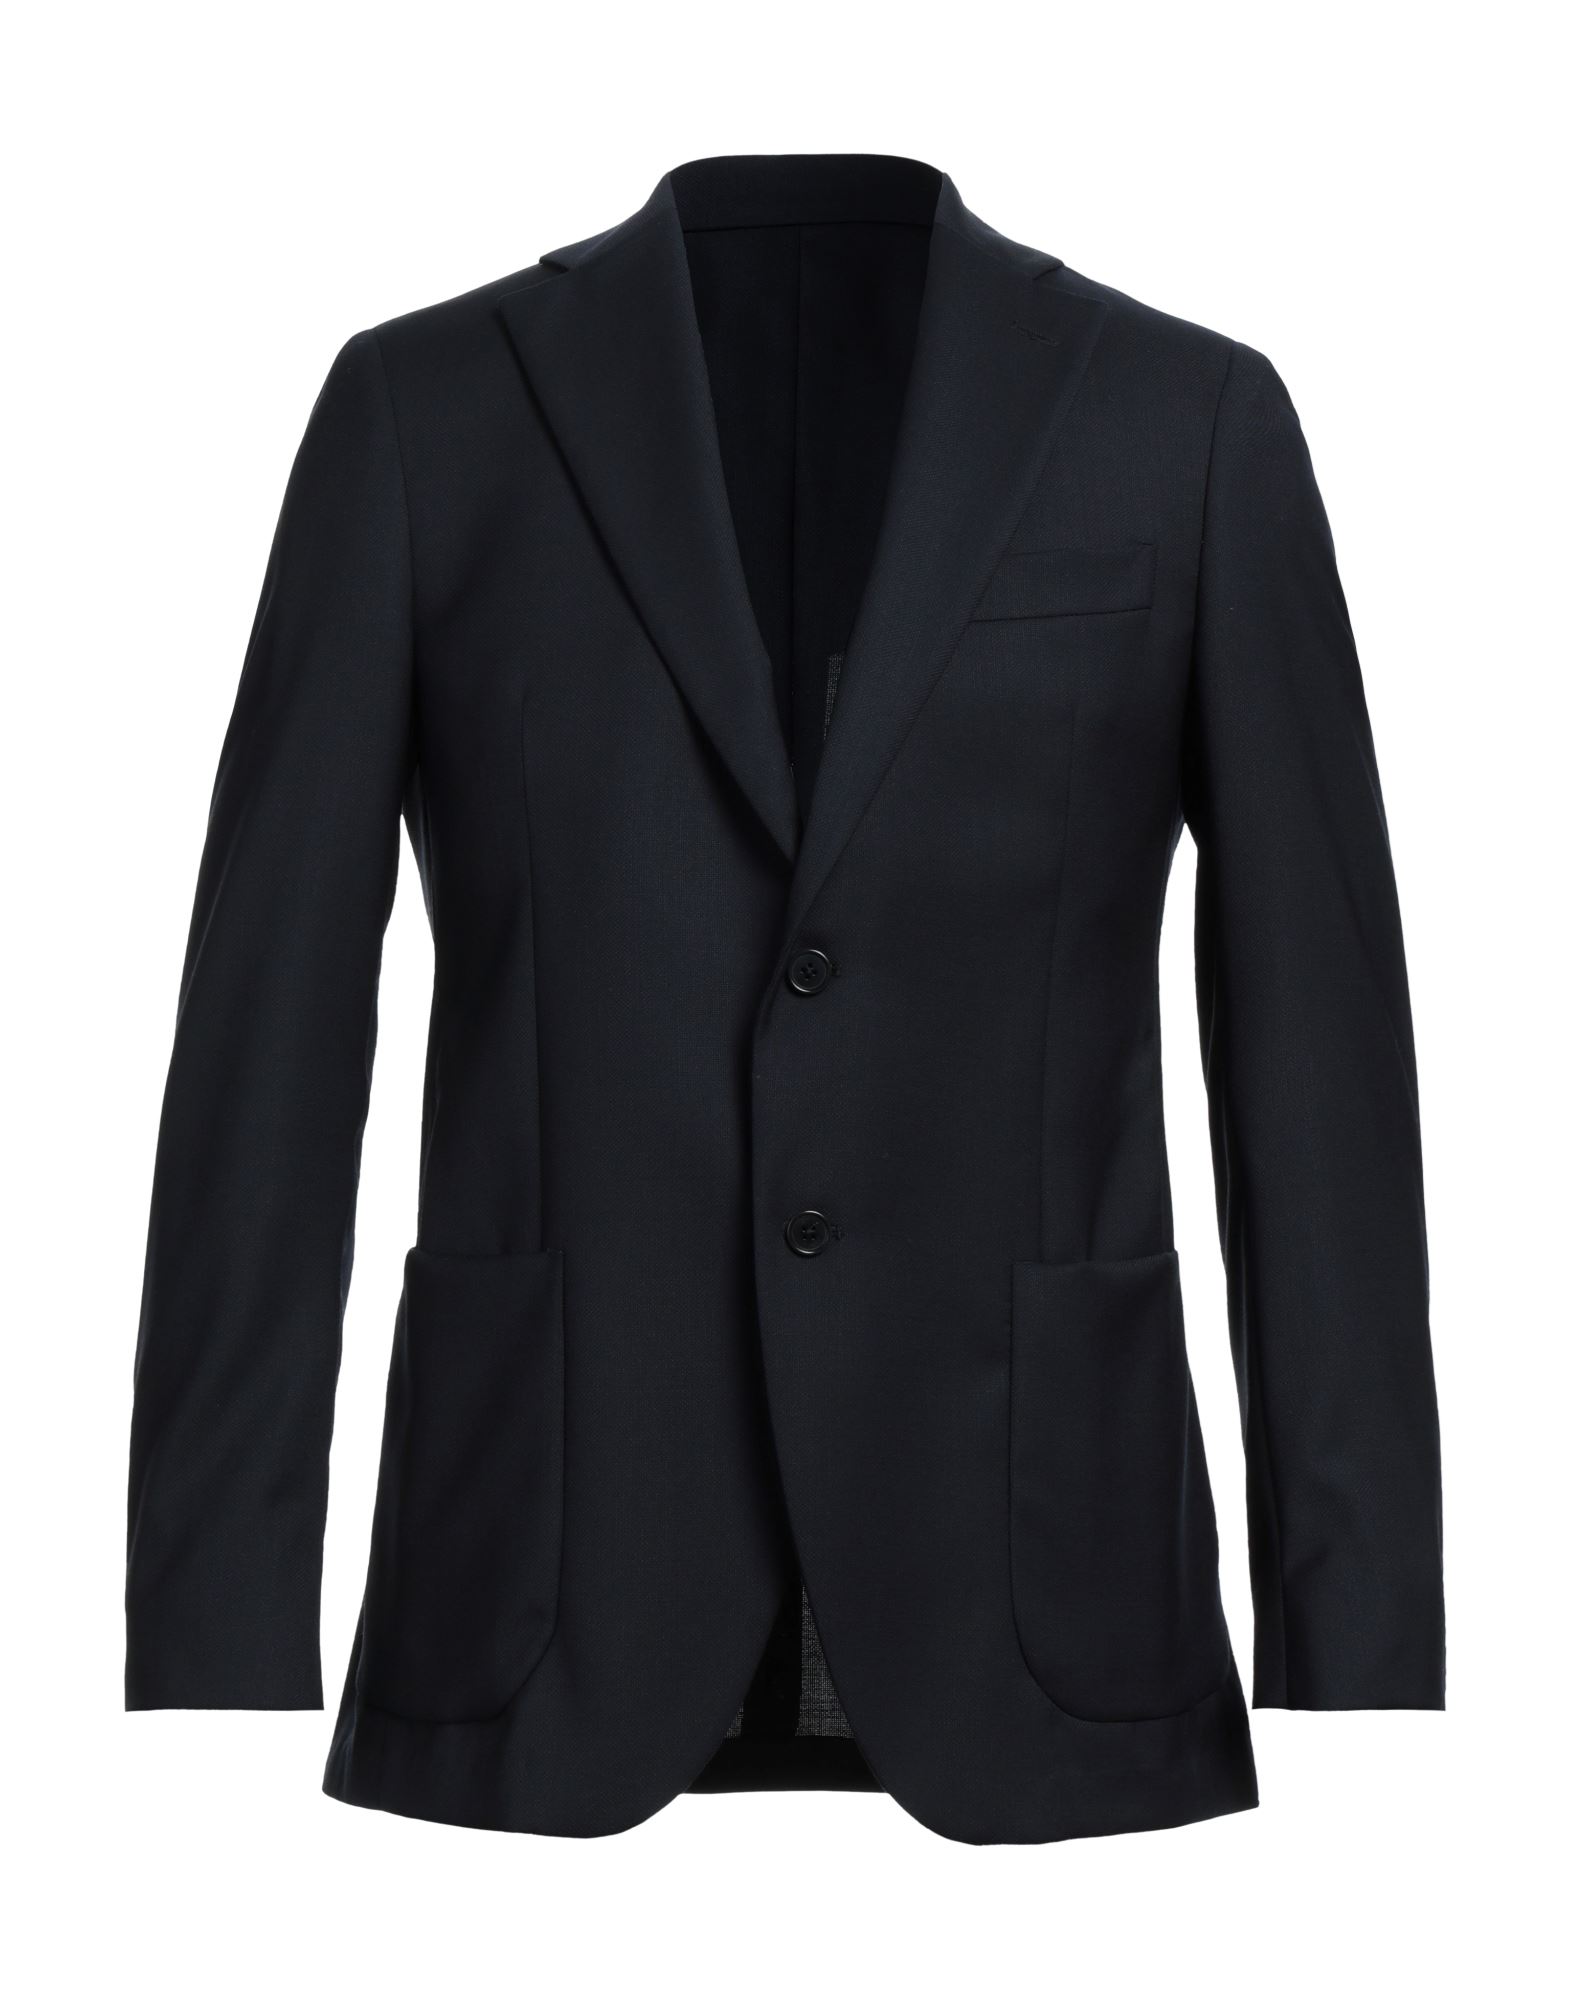 Idea Suit Jackets In Black